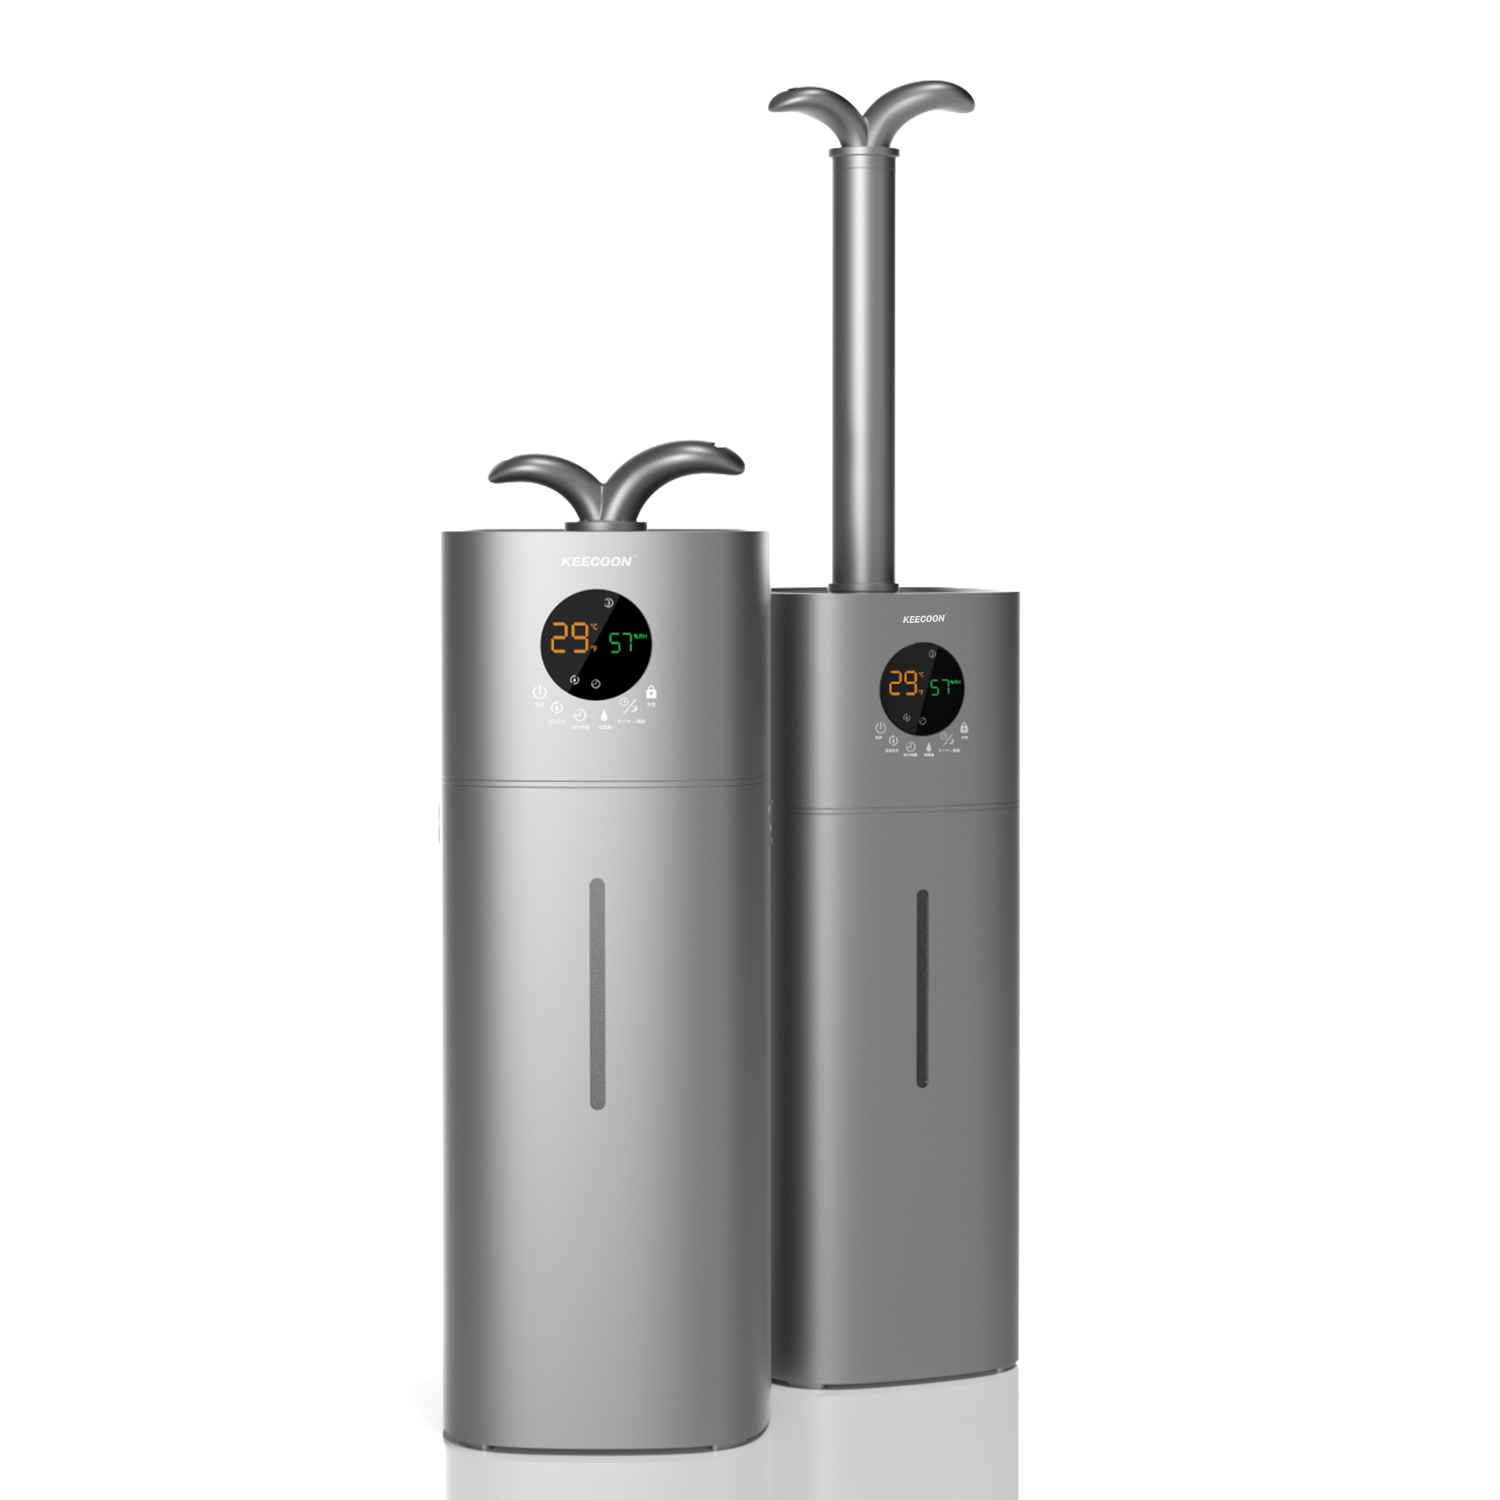 KEECOON 加湿器 大容量 業務用 家庭用 17Lタワー式 超音波加湿器